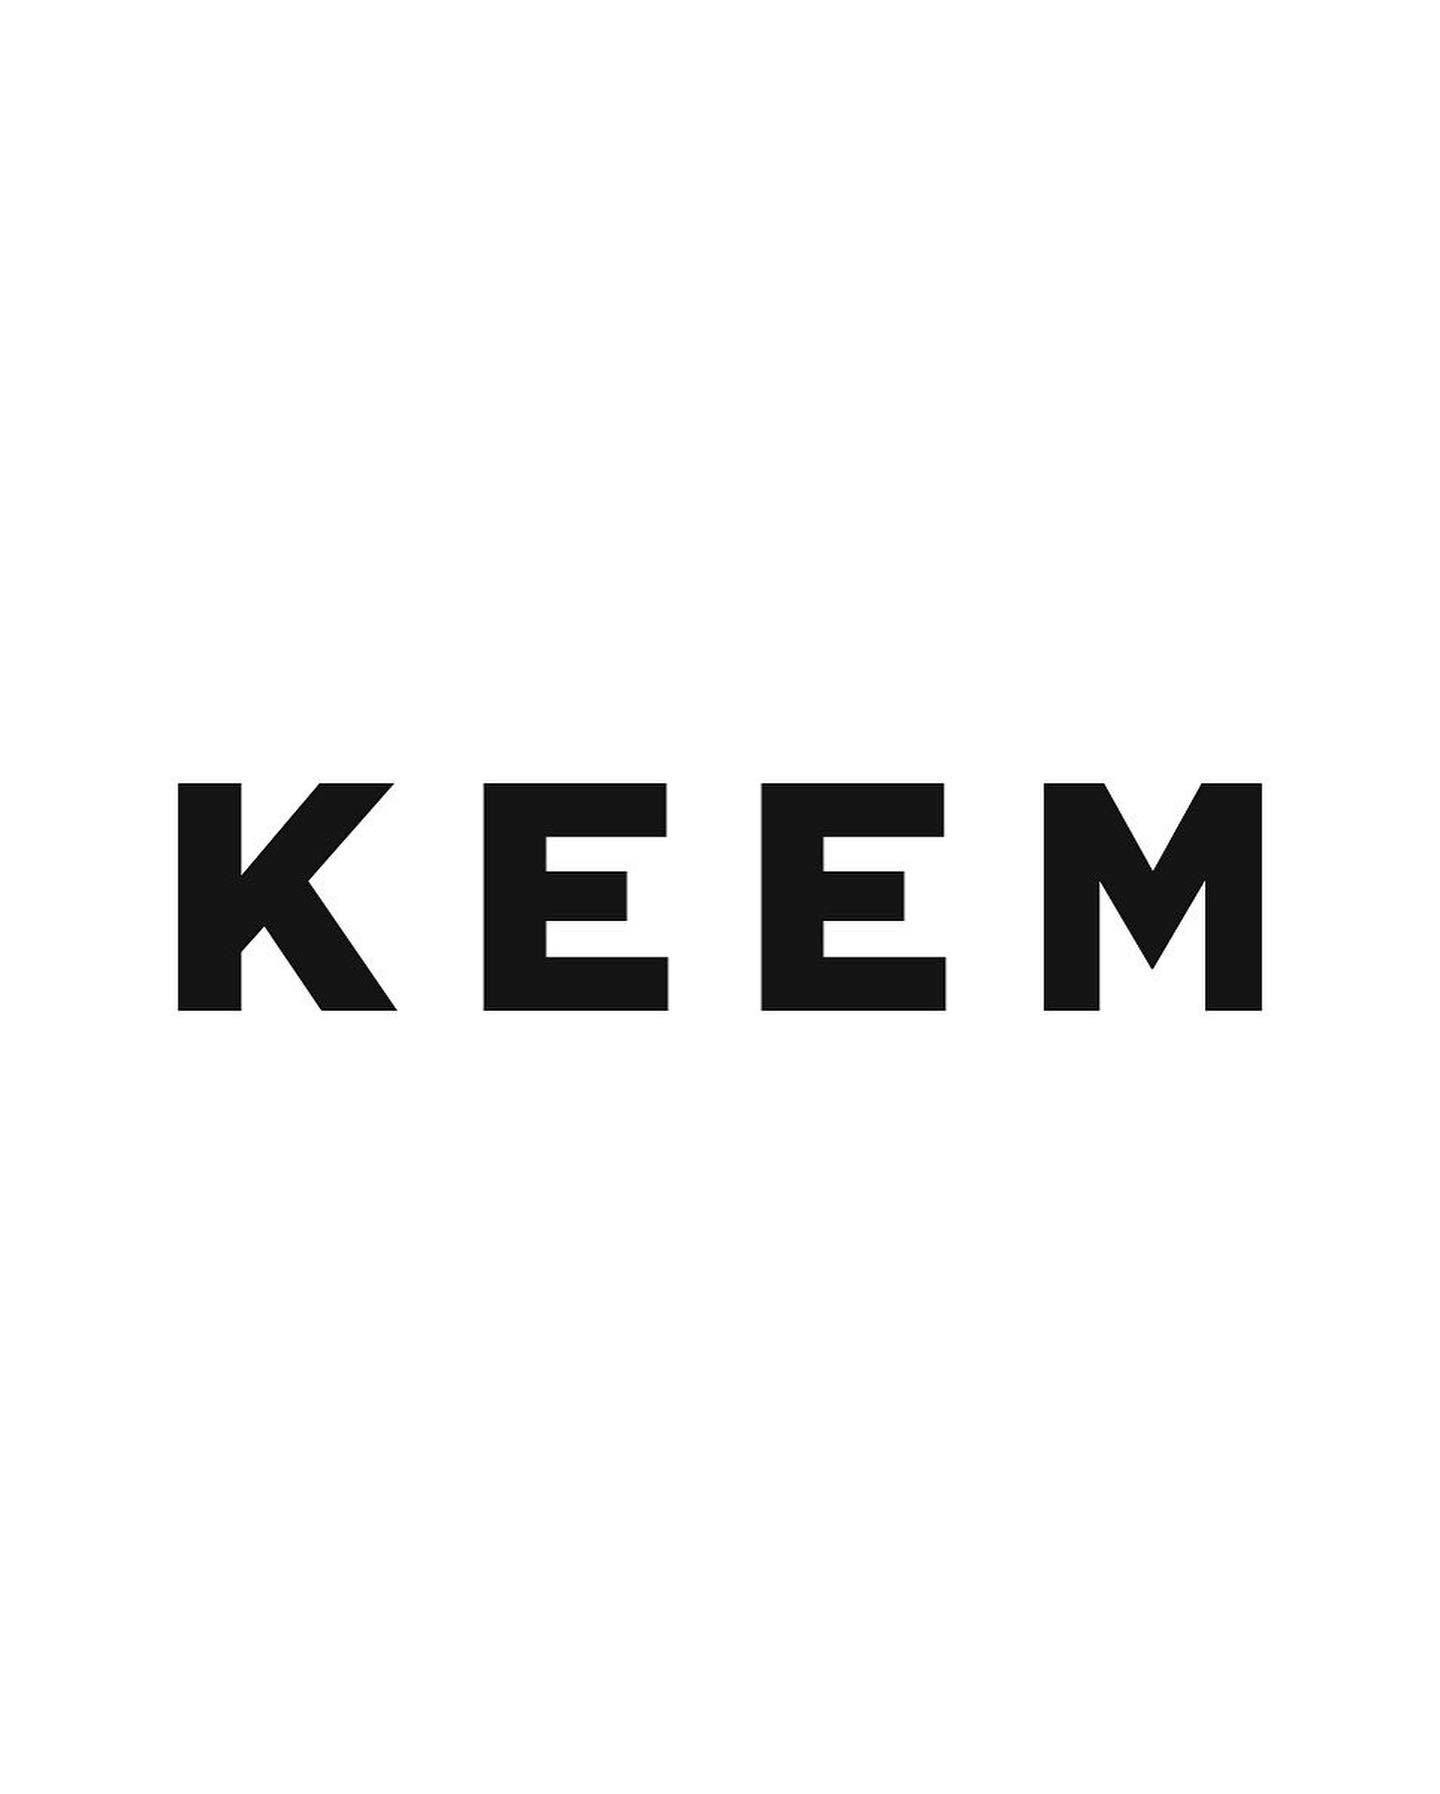 킴(KEEM)의 기업로고